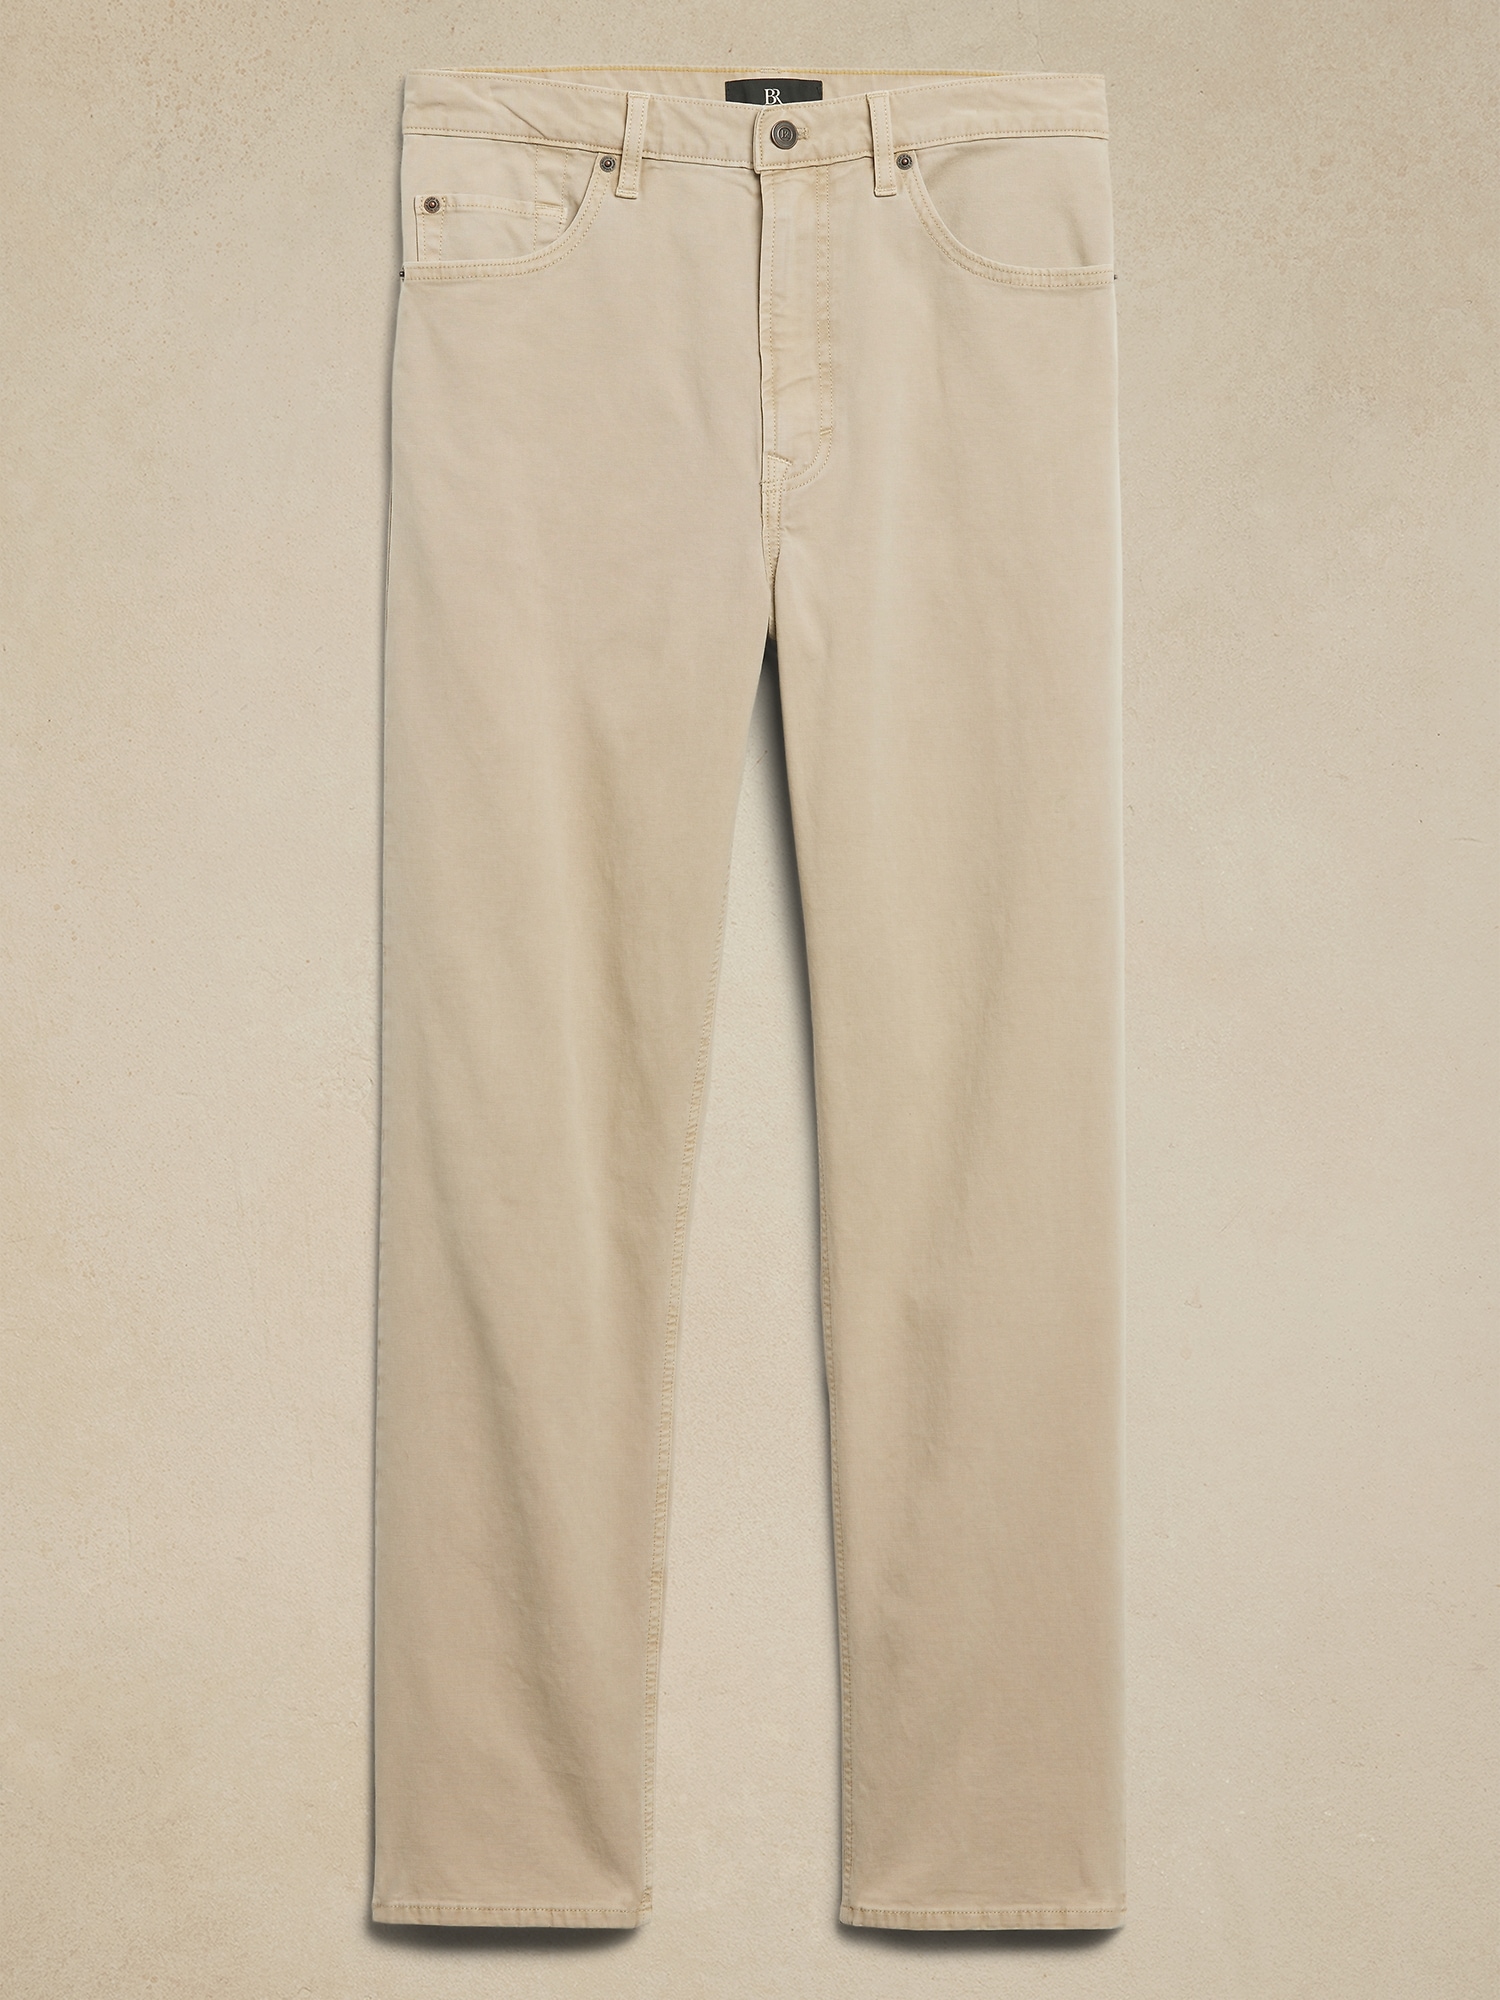 原価 バナリパ Banana Republic leather pants 90s - パンツ